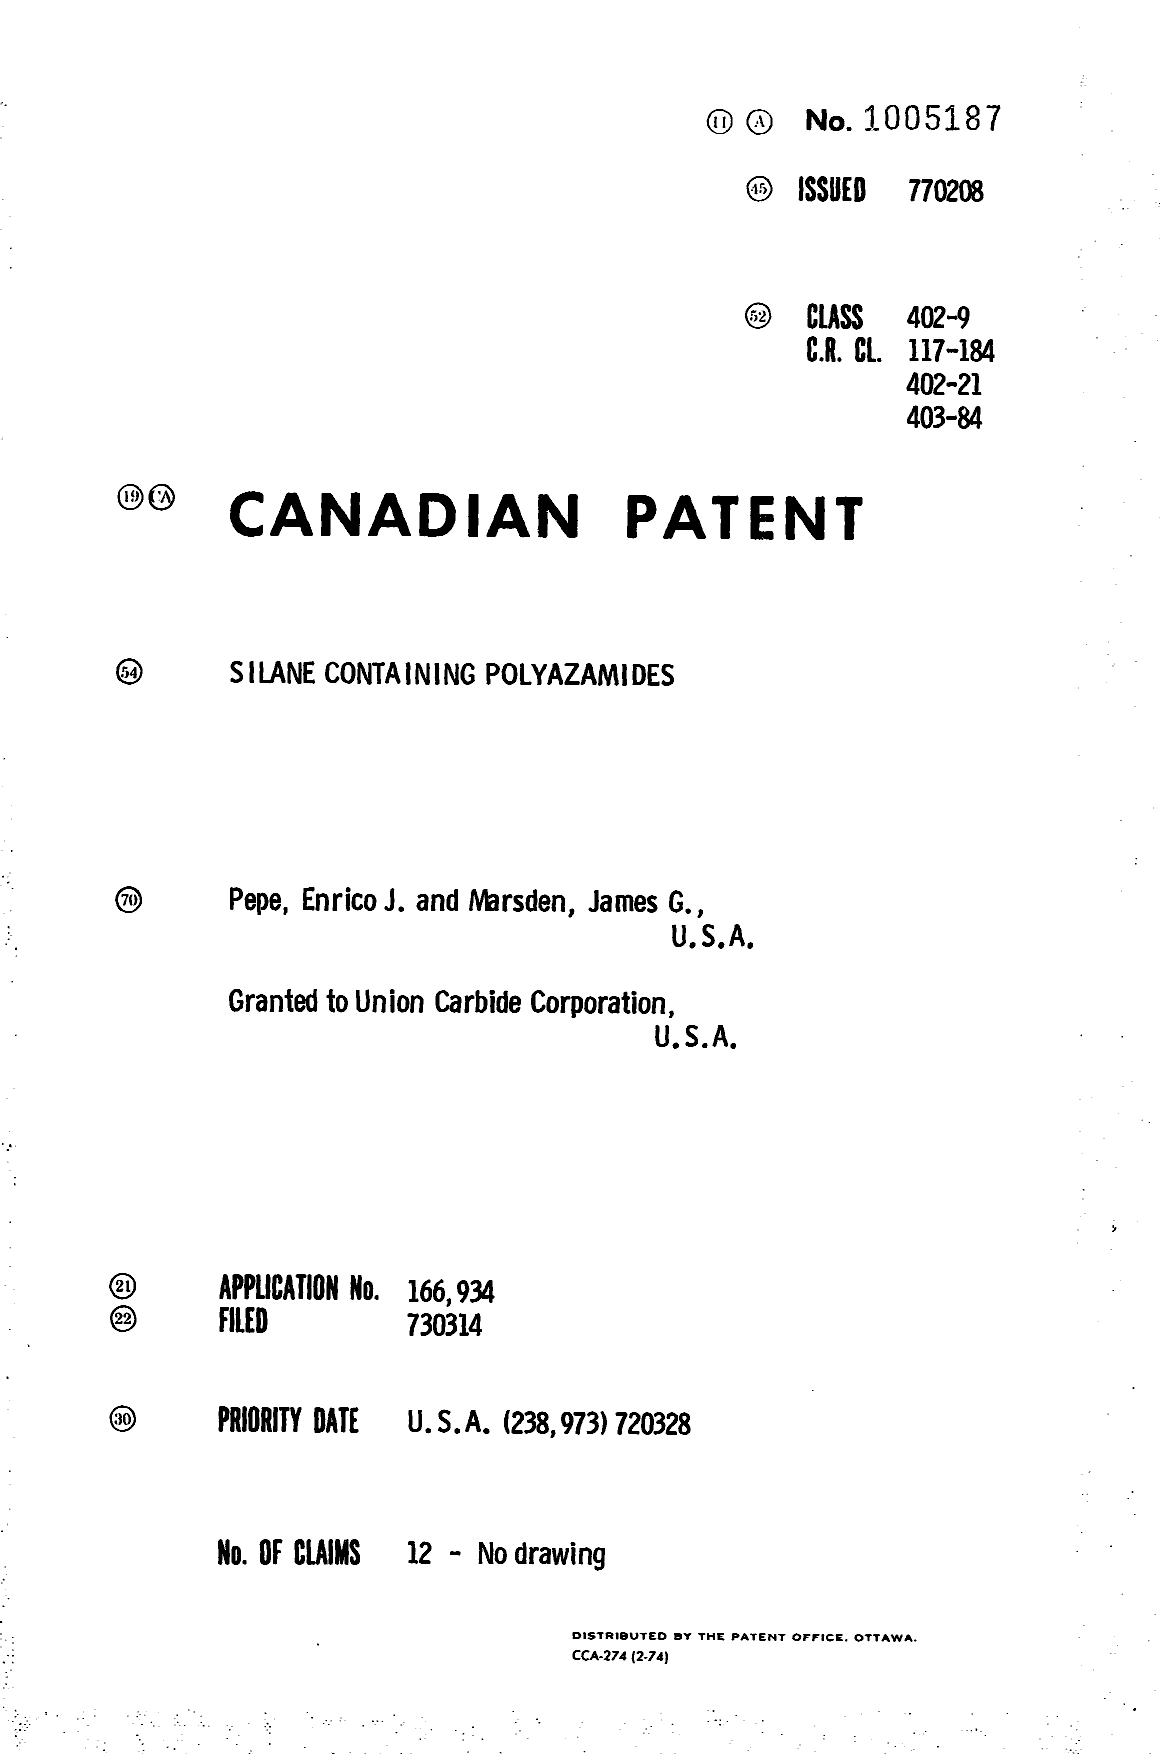 Document de brevet canadien 1005187. Page couverture 19940527. Image 1 de 1